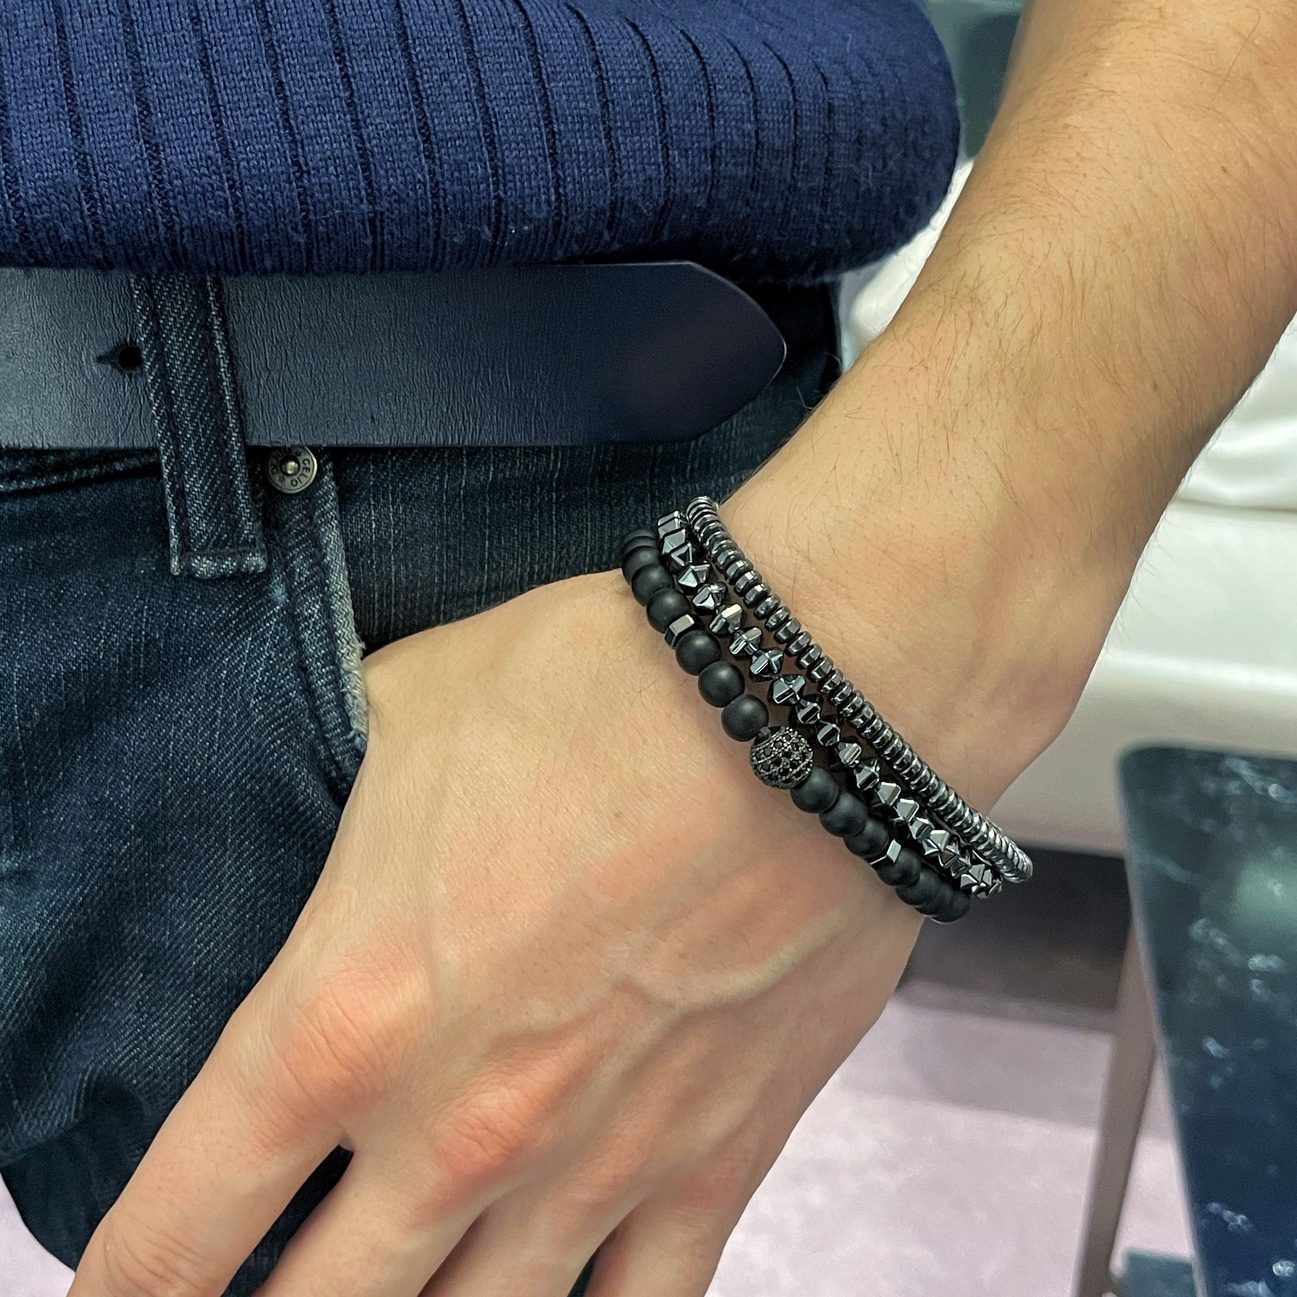 Men's Bracelet Set - Men's Beaded Bracelet - Men's Jewelry - Men's Gift